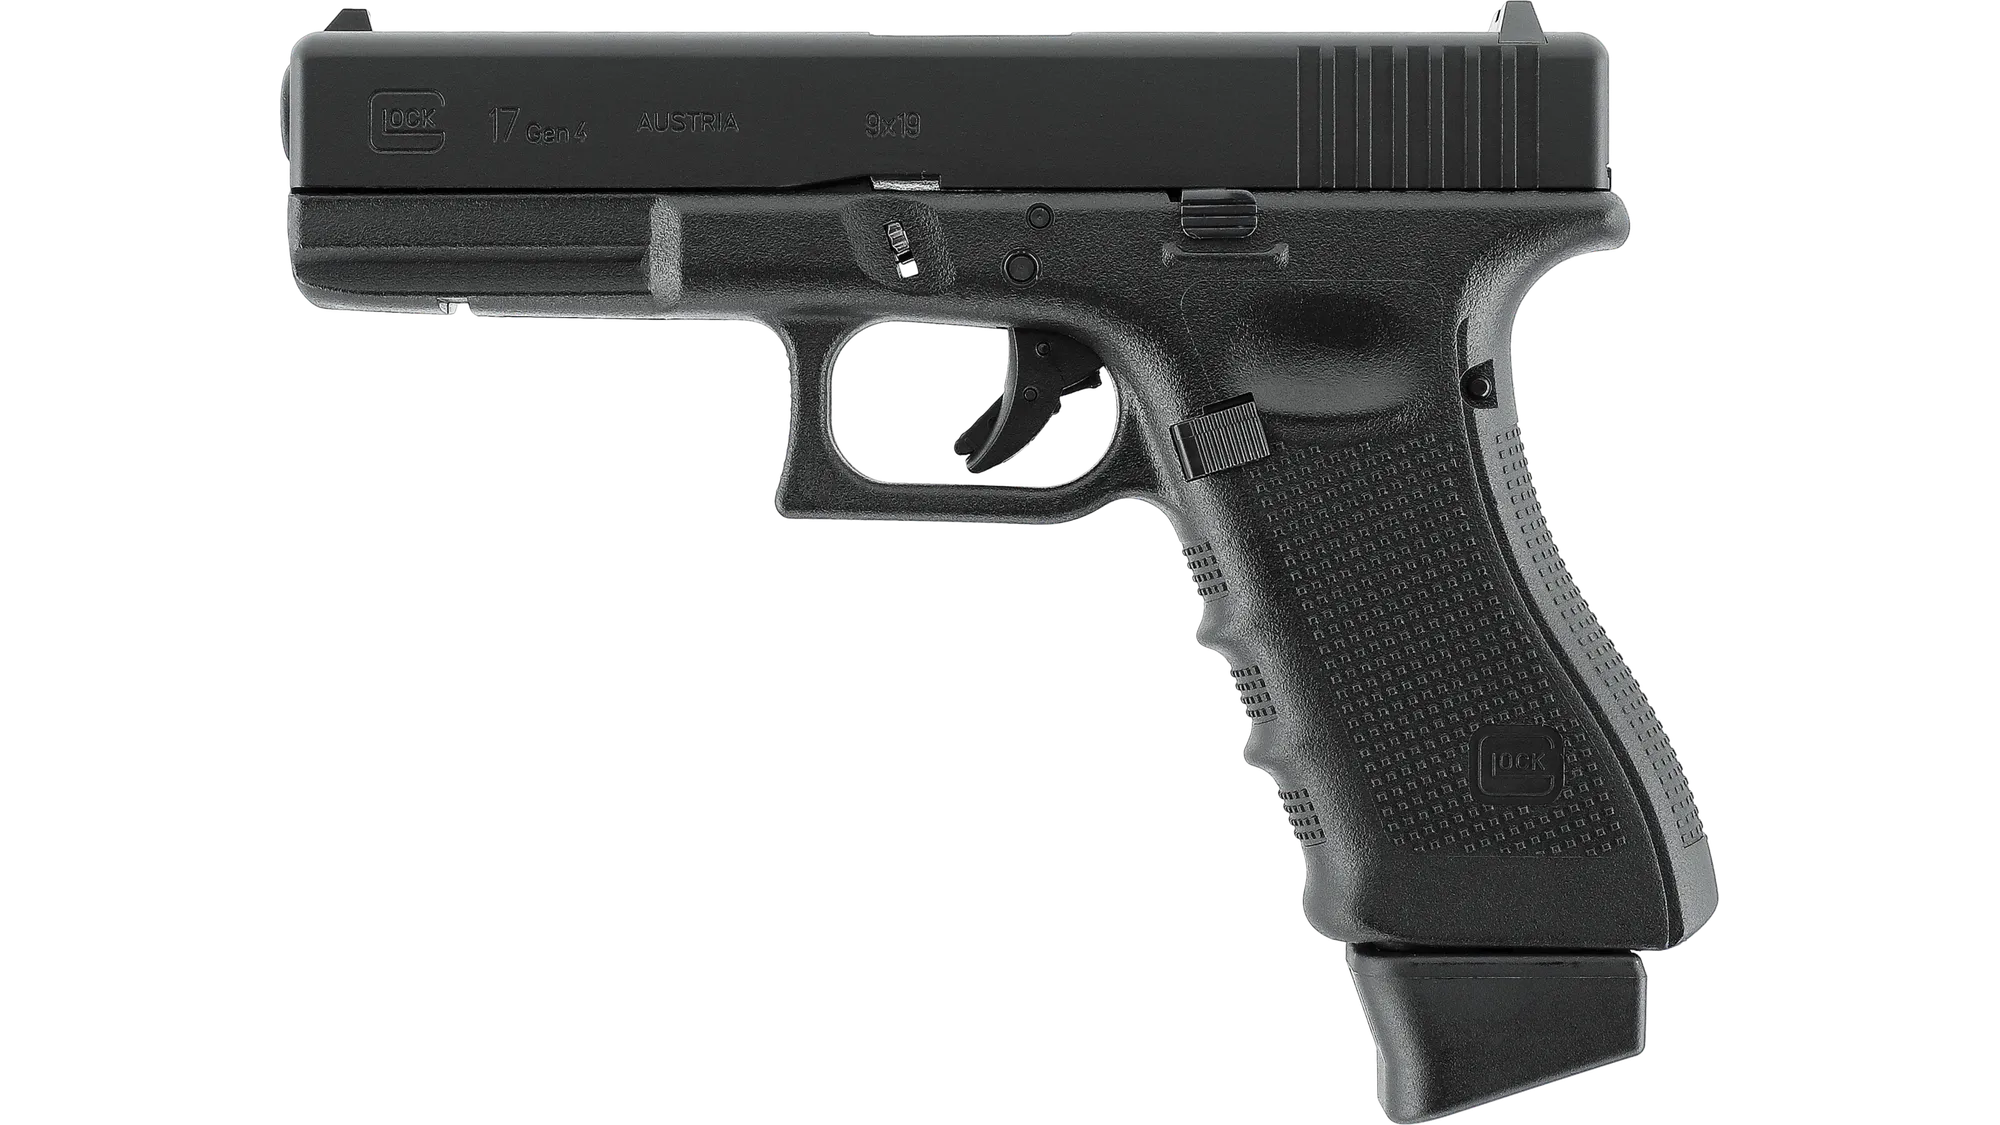 Glock 17 Gen4 Metallschlitten Co2 GBB Schwarz - Umarex